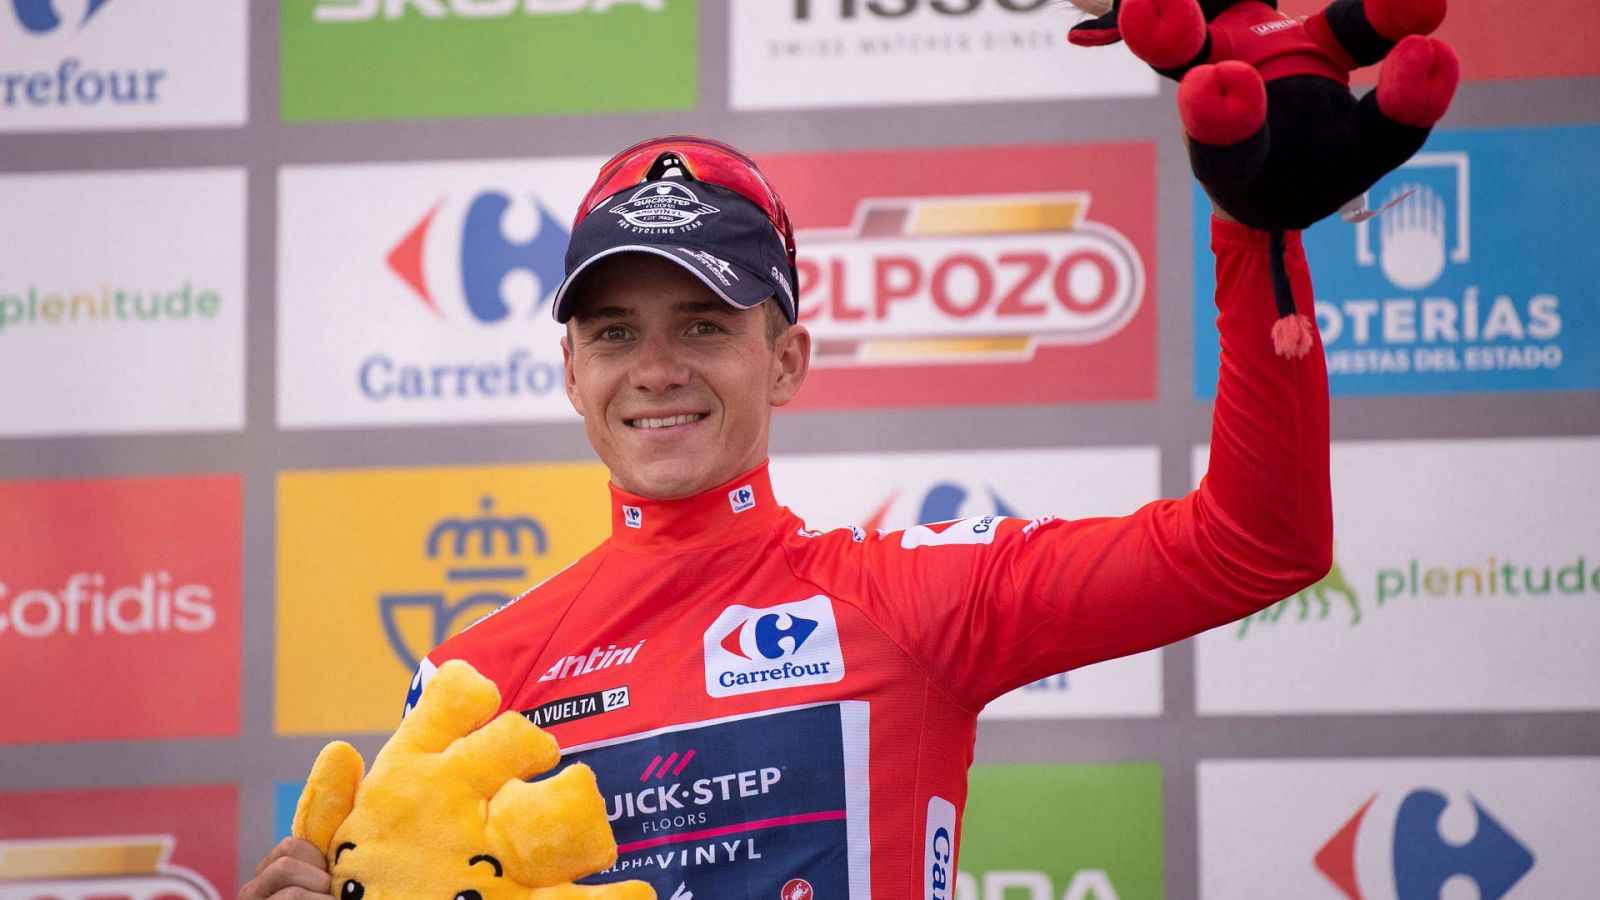 [Clasificación etapa 13 y general de la vuelta a ciclista a España 2022] Evenepoel, con el maillot rojo